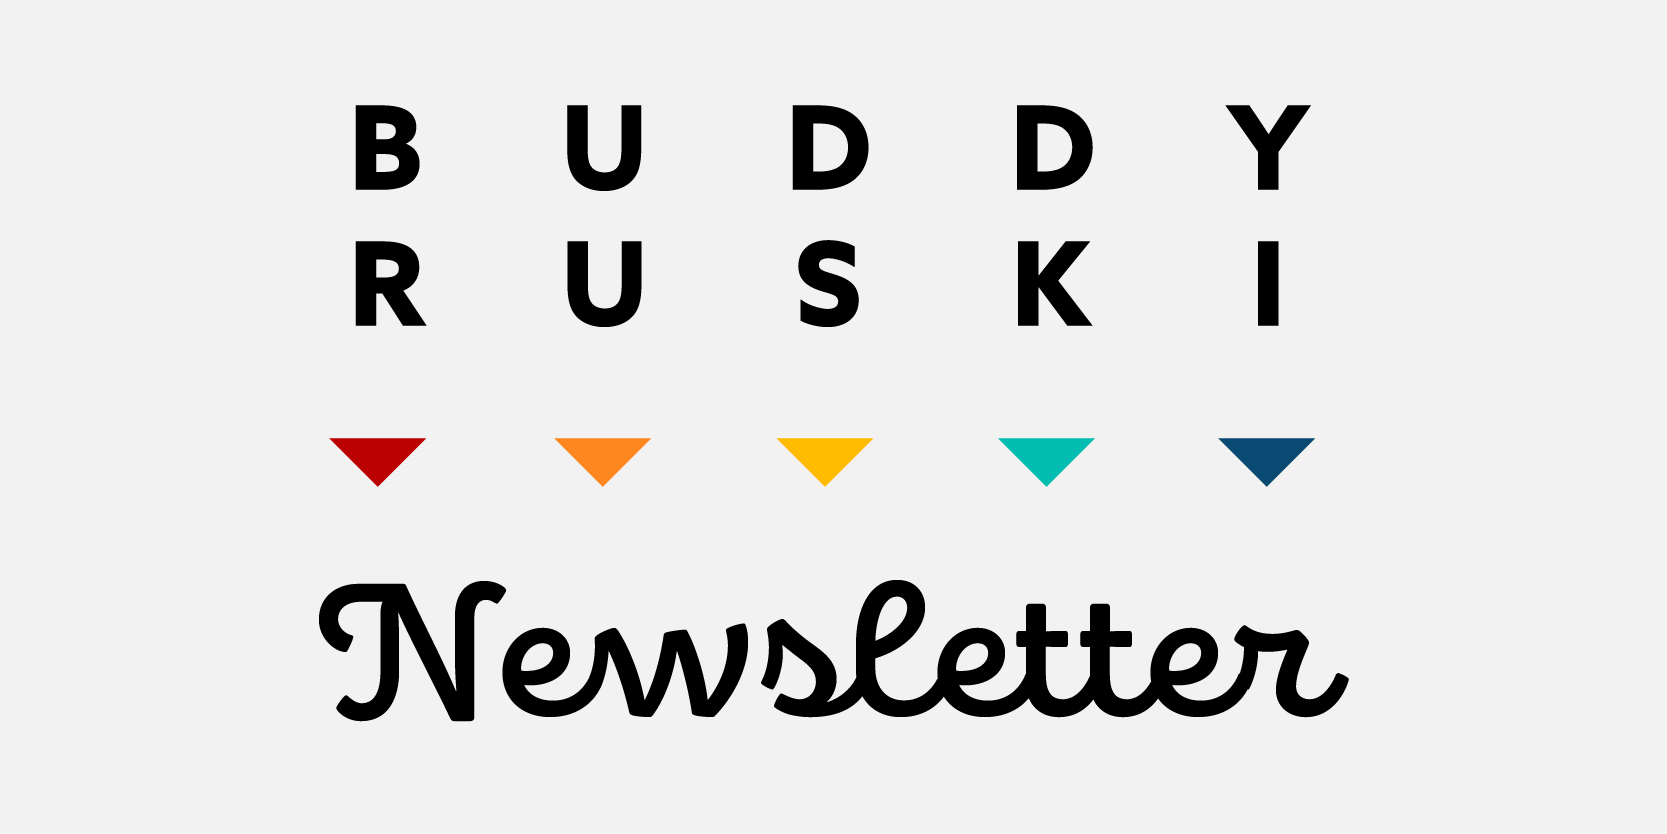 Buddy Ruski Newsletter 06.08.21